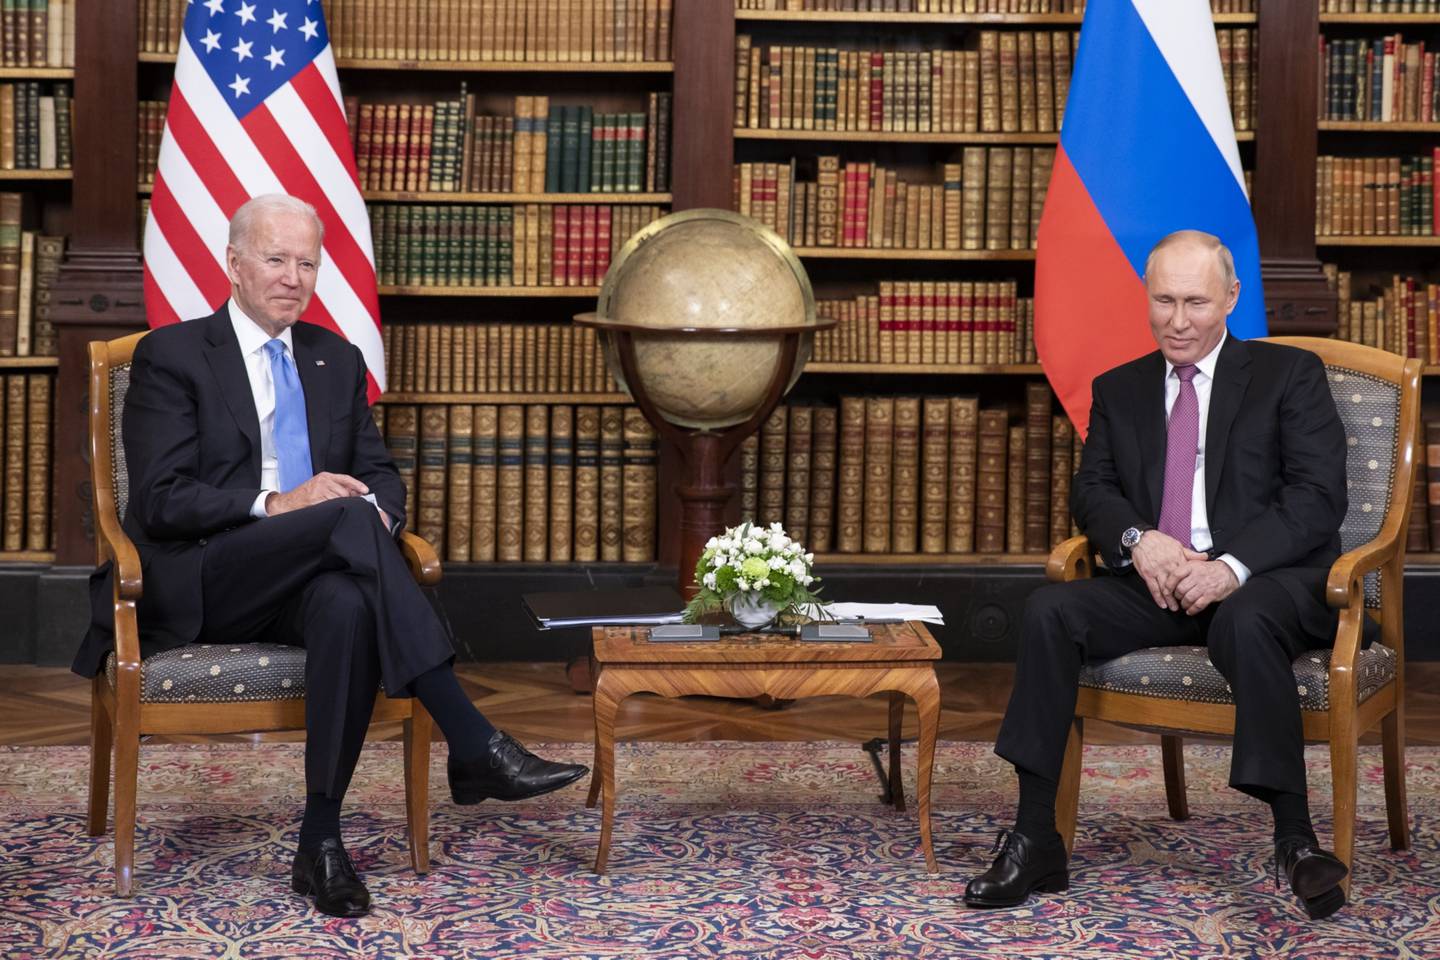 El presidente Joe Biden tuvo su primera reunión presencial con el presidente Vladimir Putin en 2021.